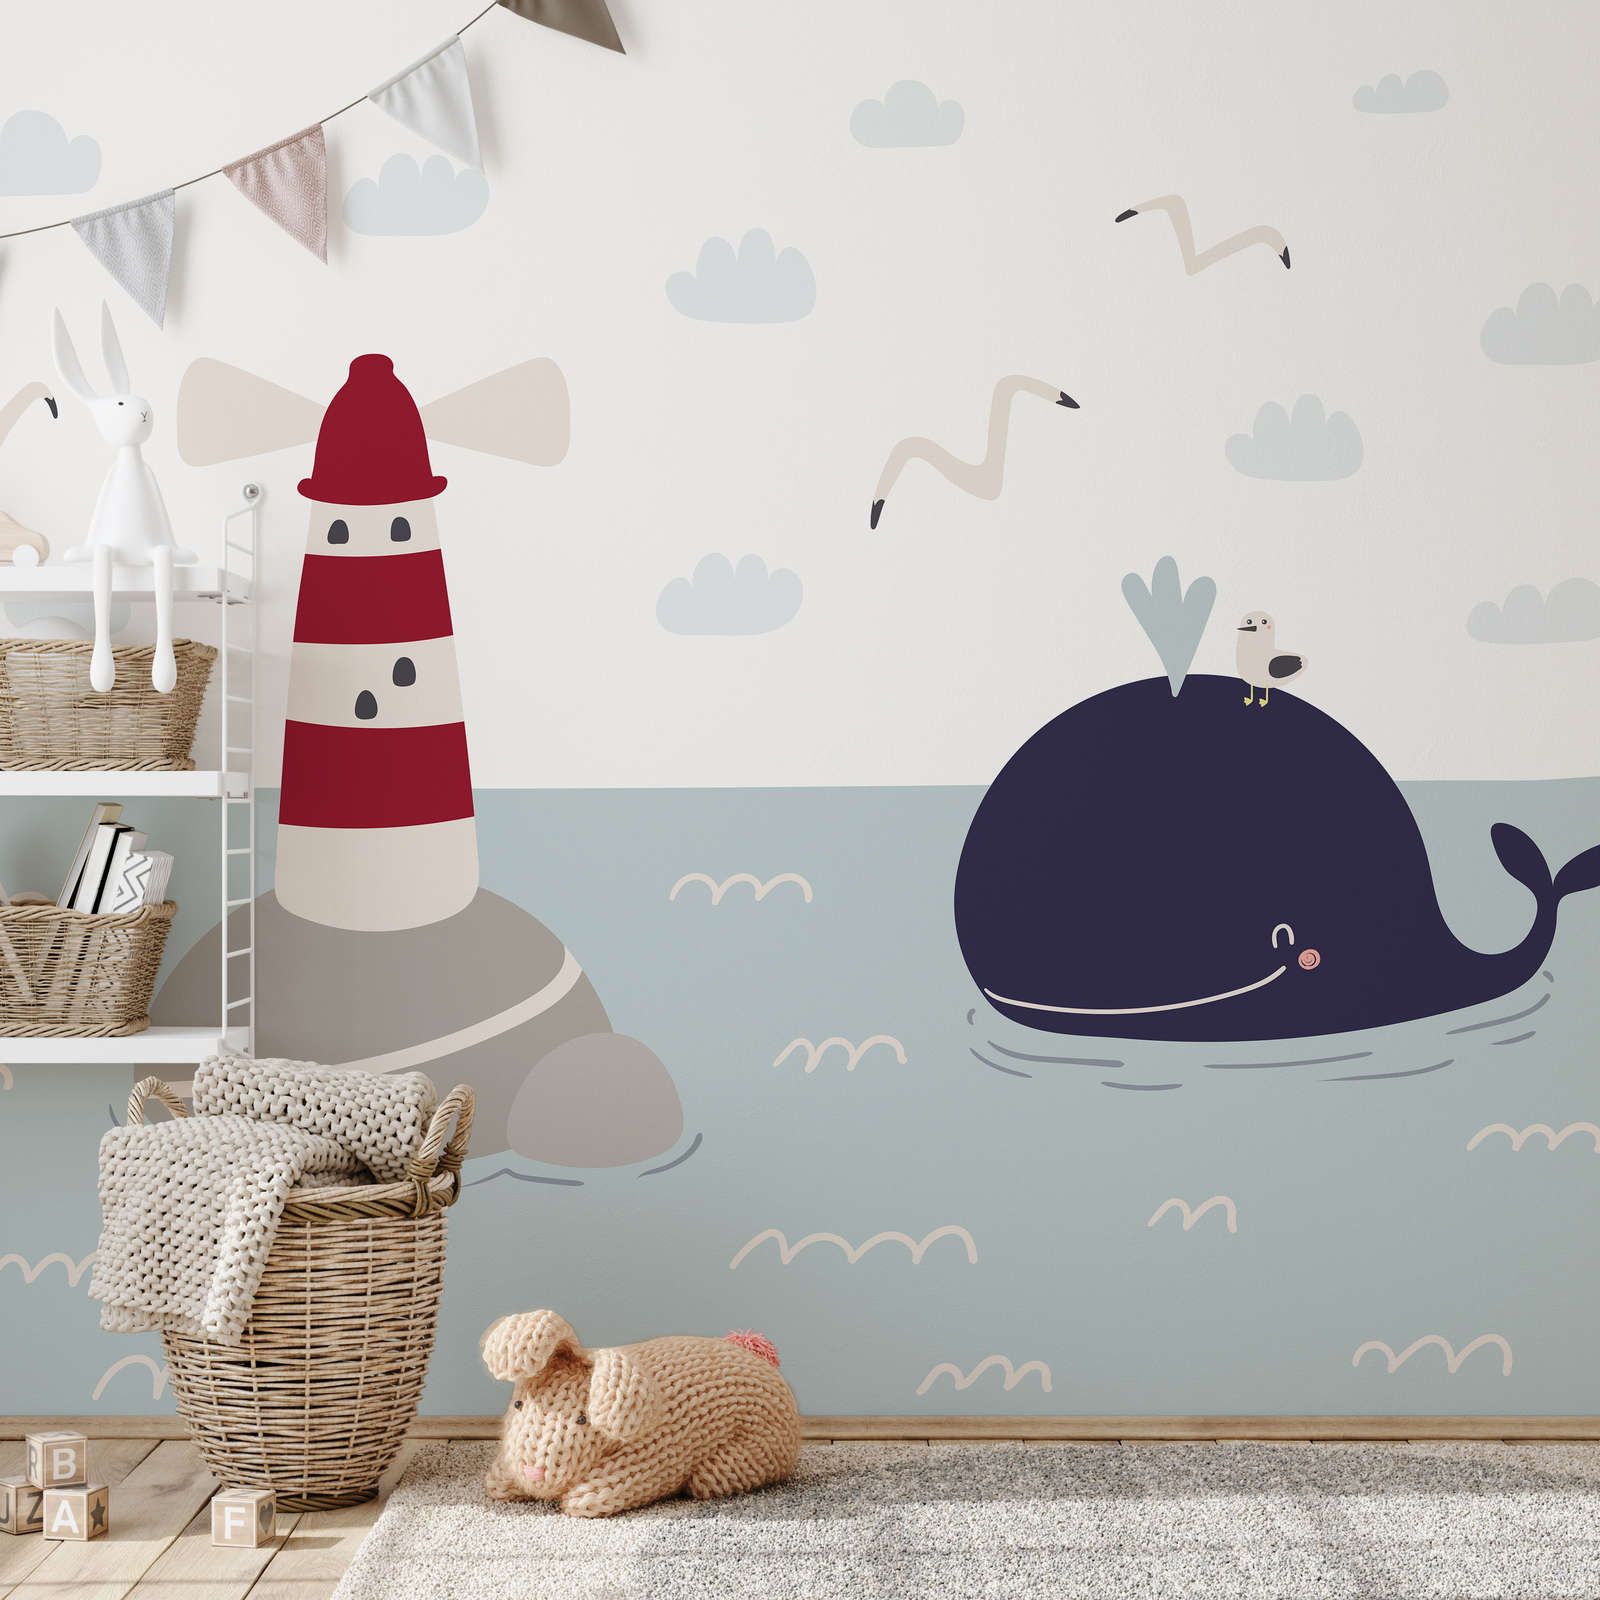             Fototapete fürs Kinderzimmer mit Leuchturm und Wal – Glattes & perlmutt-schimmerndes Vlies
        